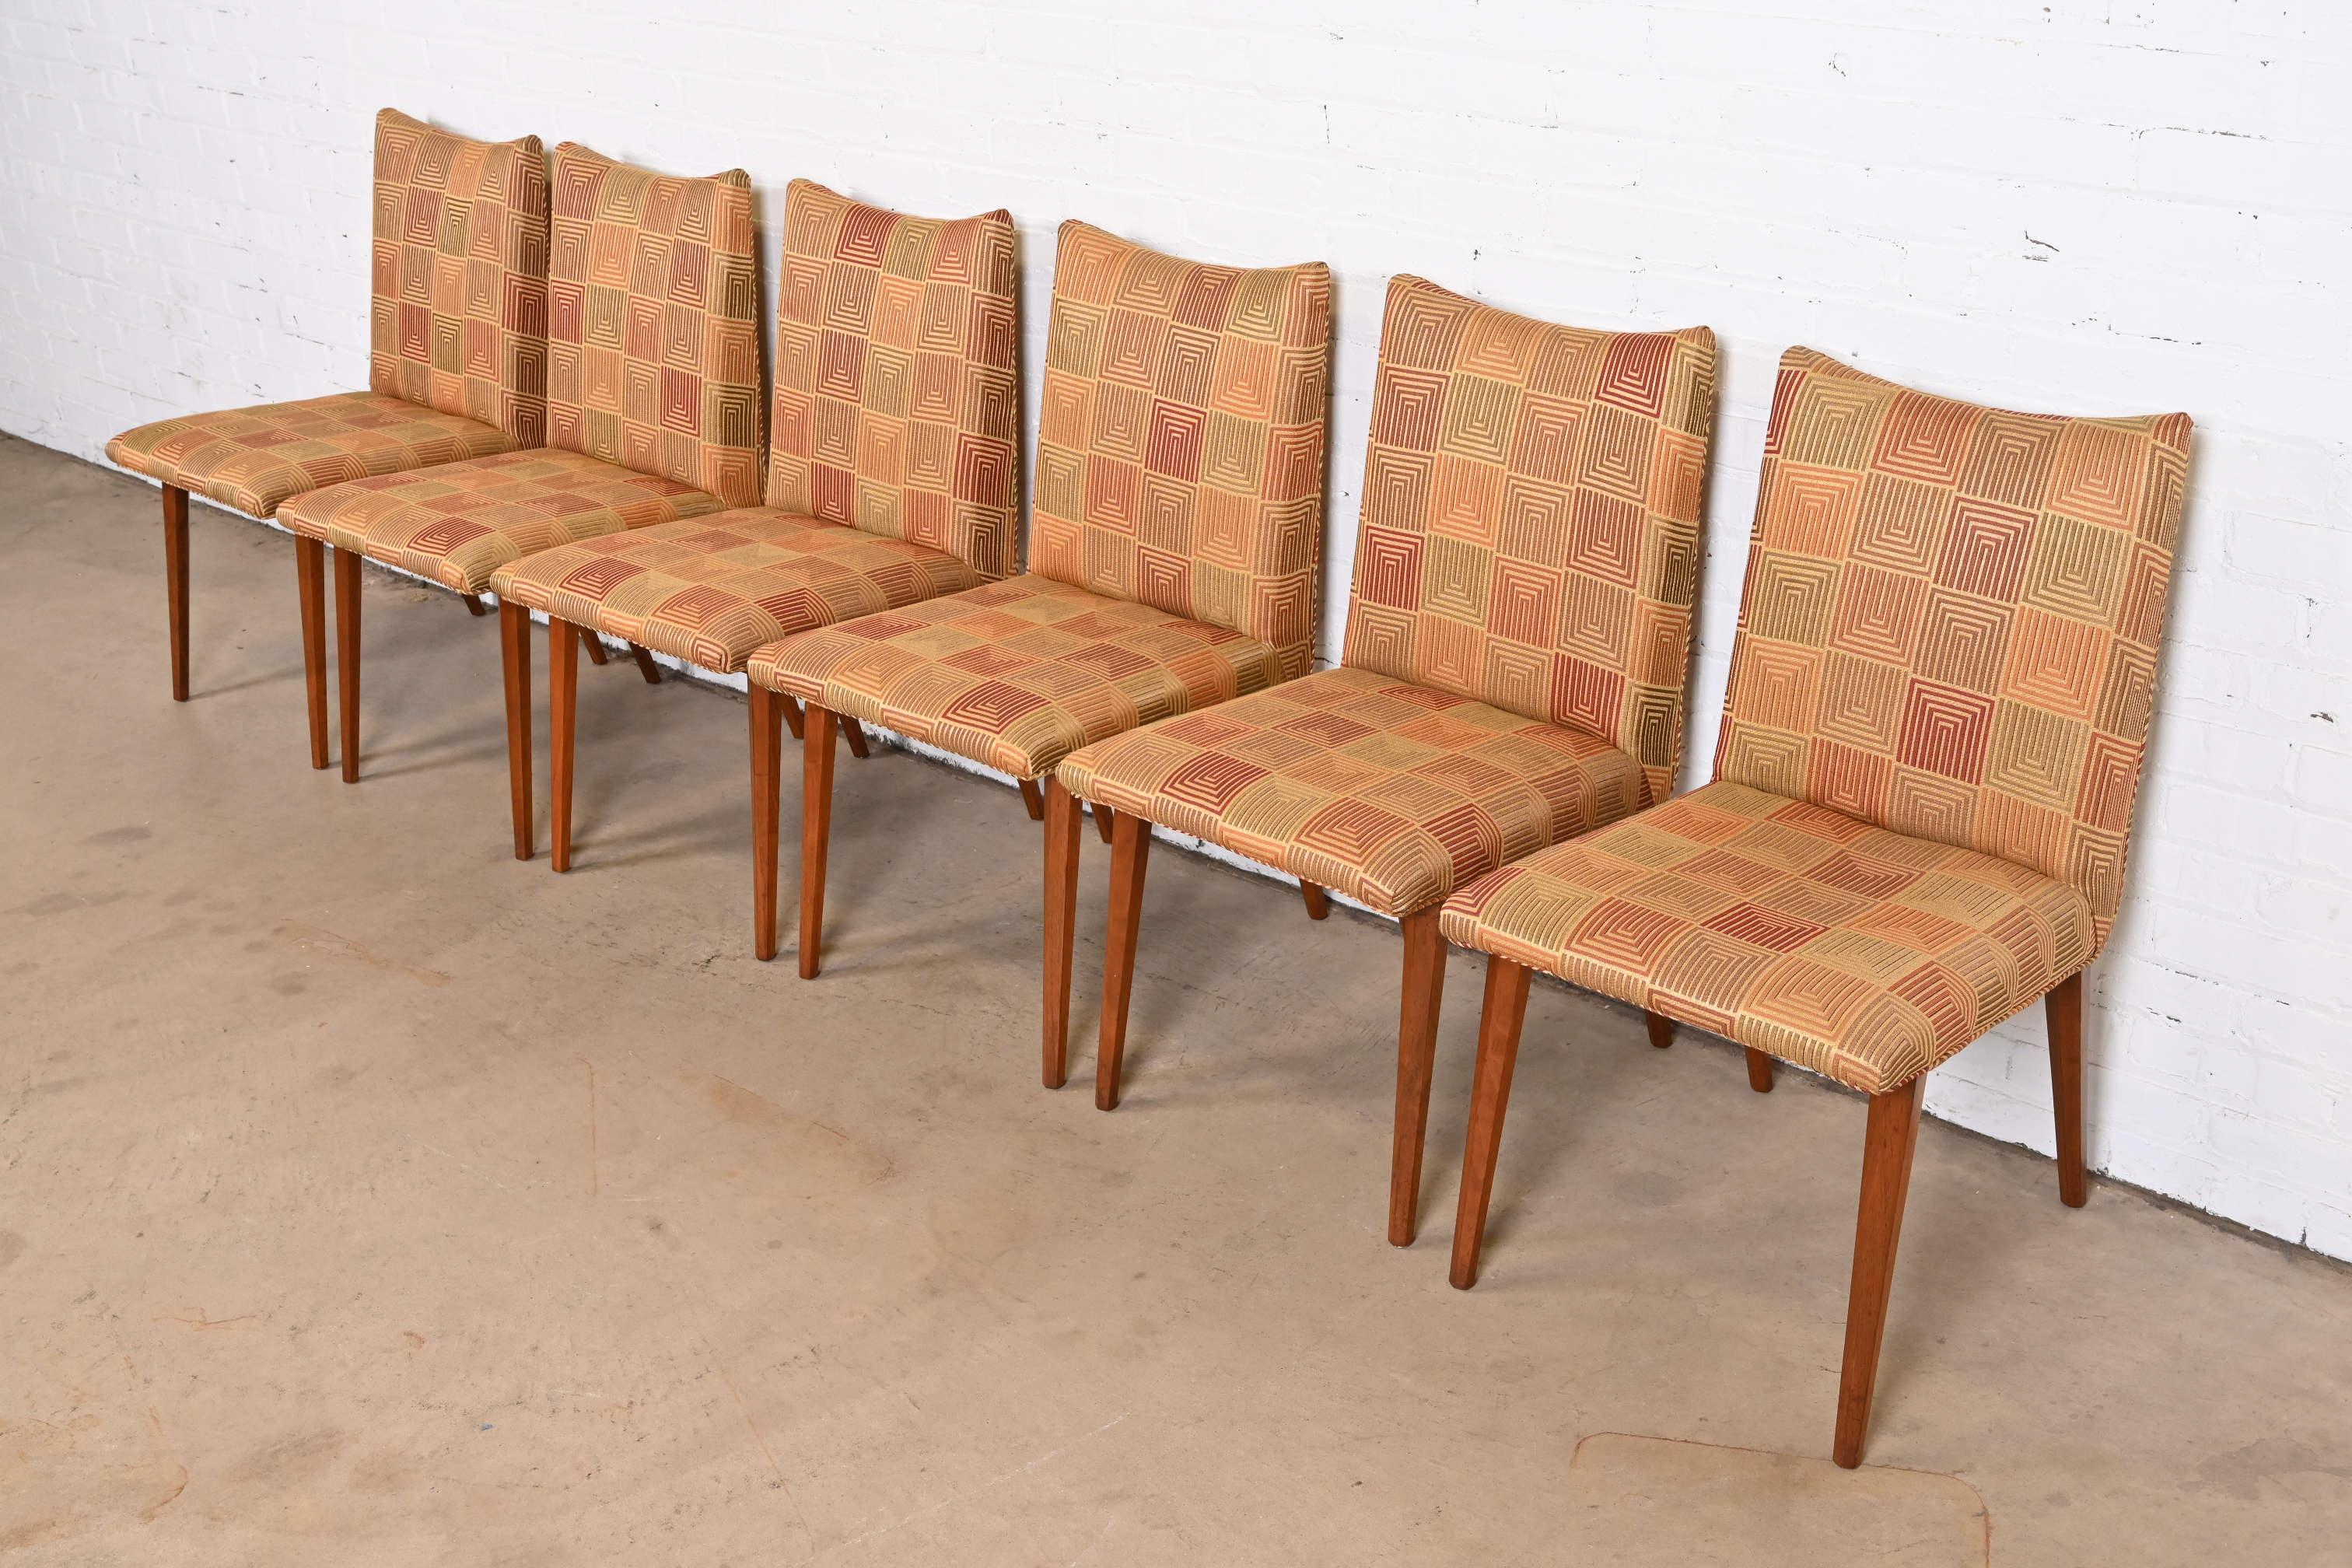 Ein wunderschönes Set von sechs Mid-Century Modern Esszimmerstühlen

Von Bert England für Johnson Furniture

USA, 1960er Jahre

Rahmen aus geschnitztem Nussbaumholz, Polsterung mit geometrischem Muster.

Maße: 18,25 